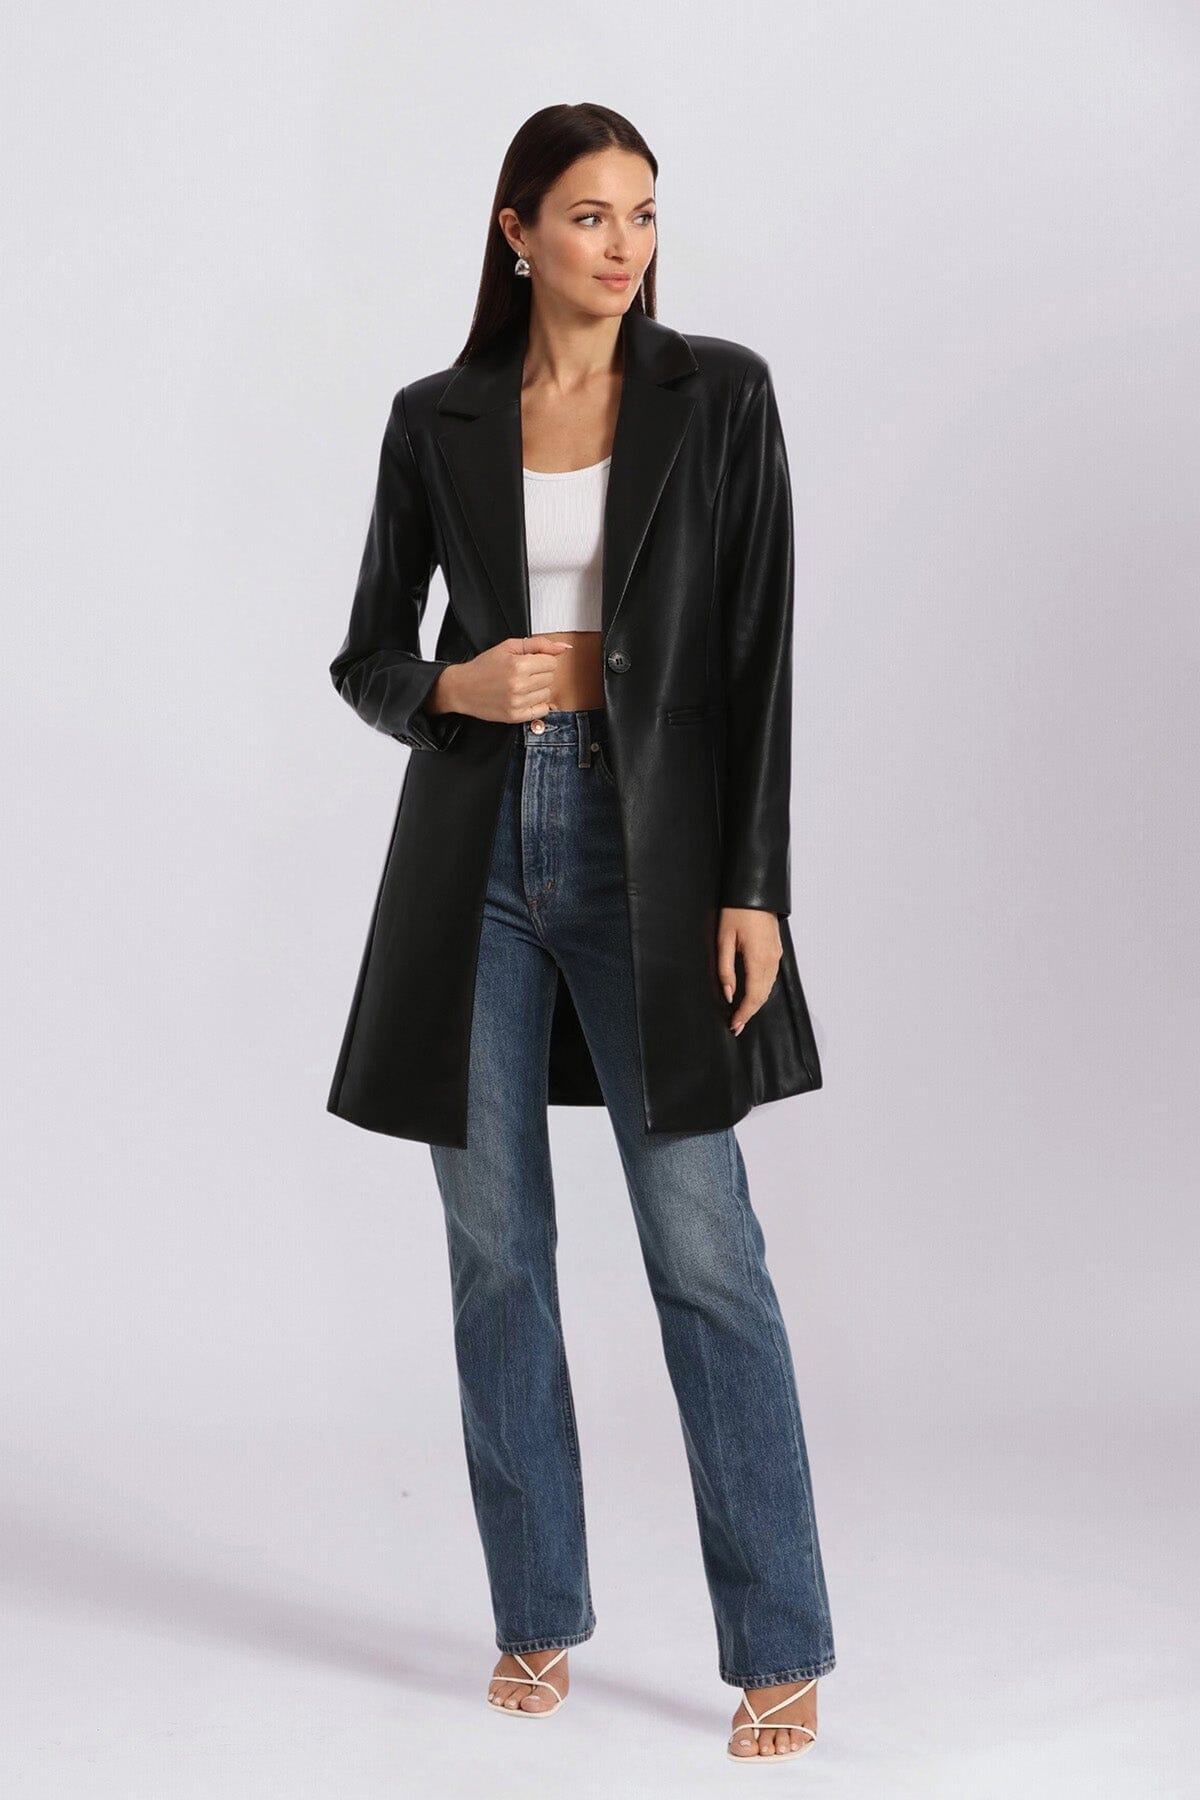 Black Cute Faux Leather Longline Blazer Jacket - Coats & Jackets Avec Les Filles 